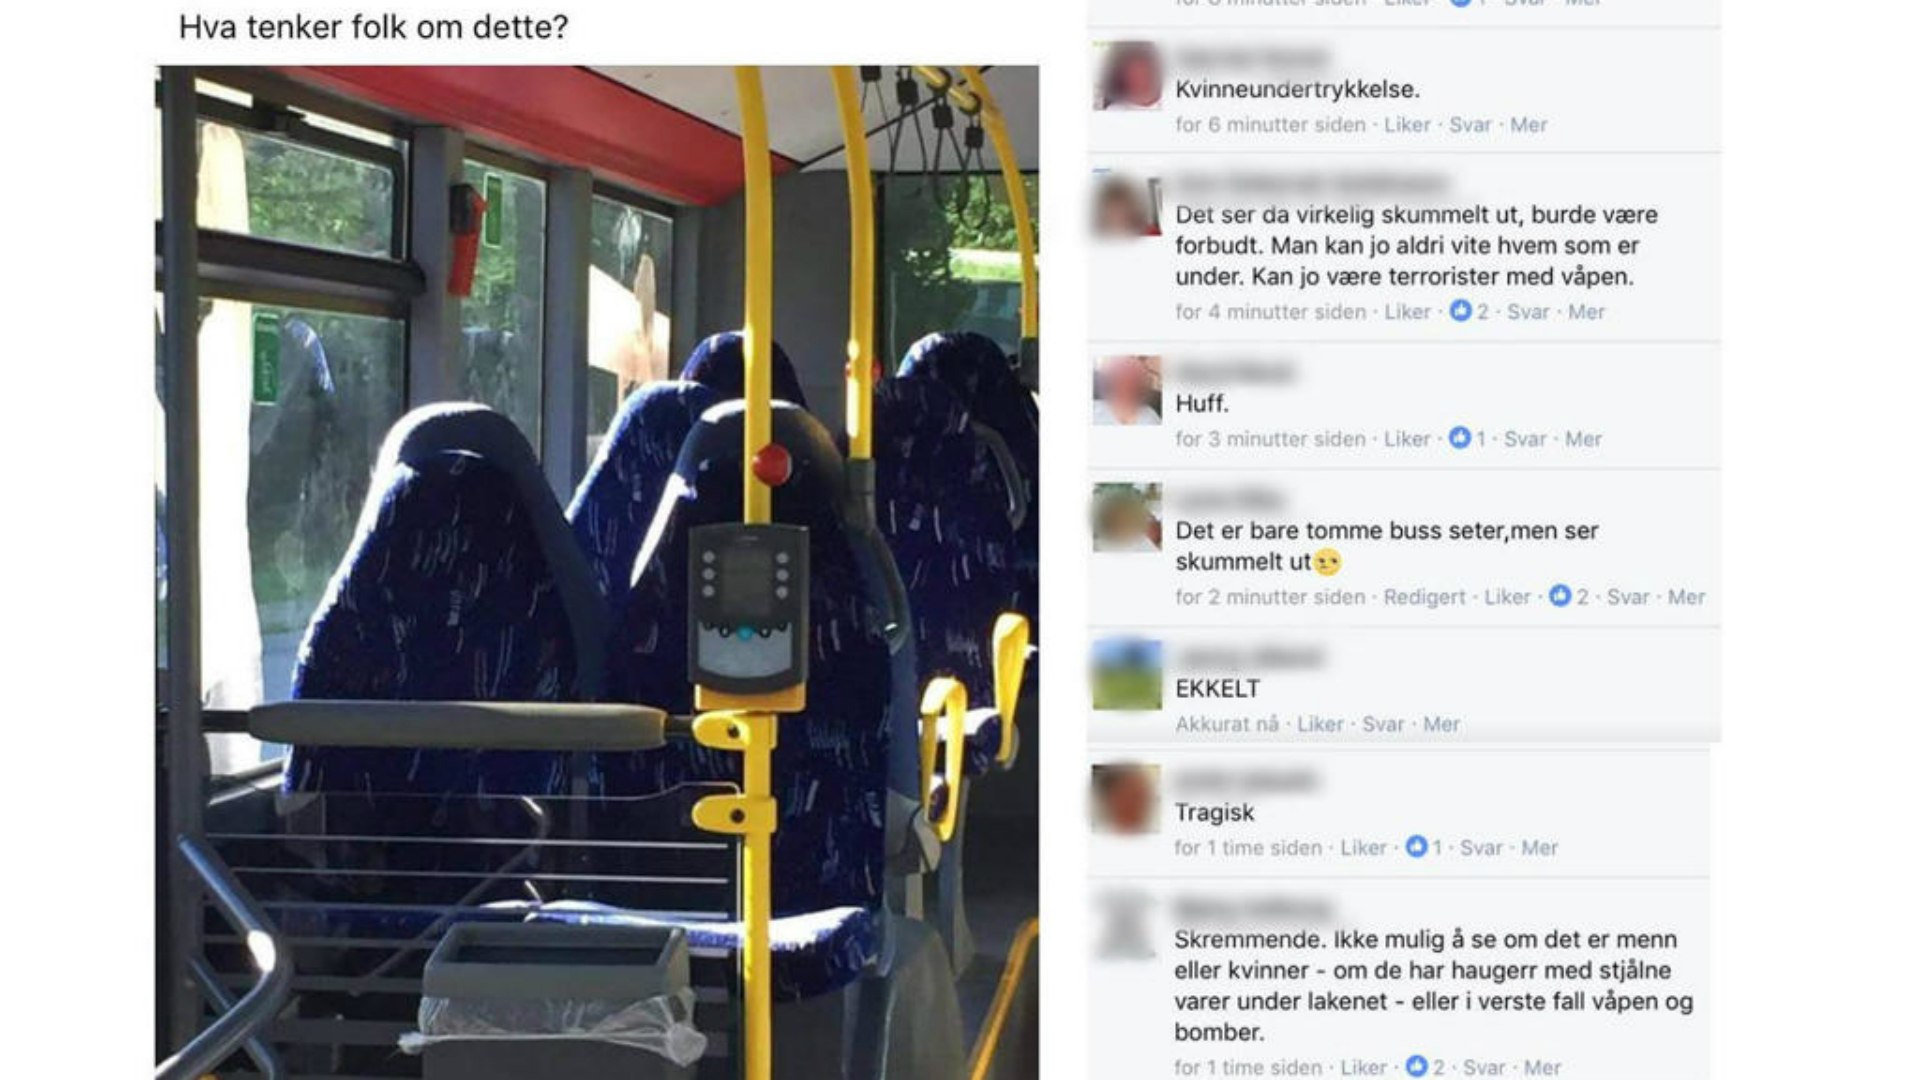 Norwegian fascists mistake empty bus seats for burka-clad women